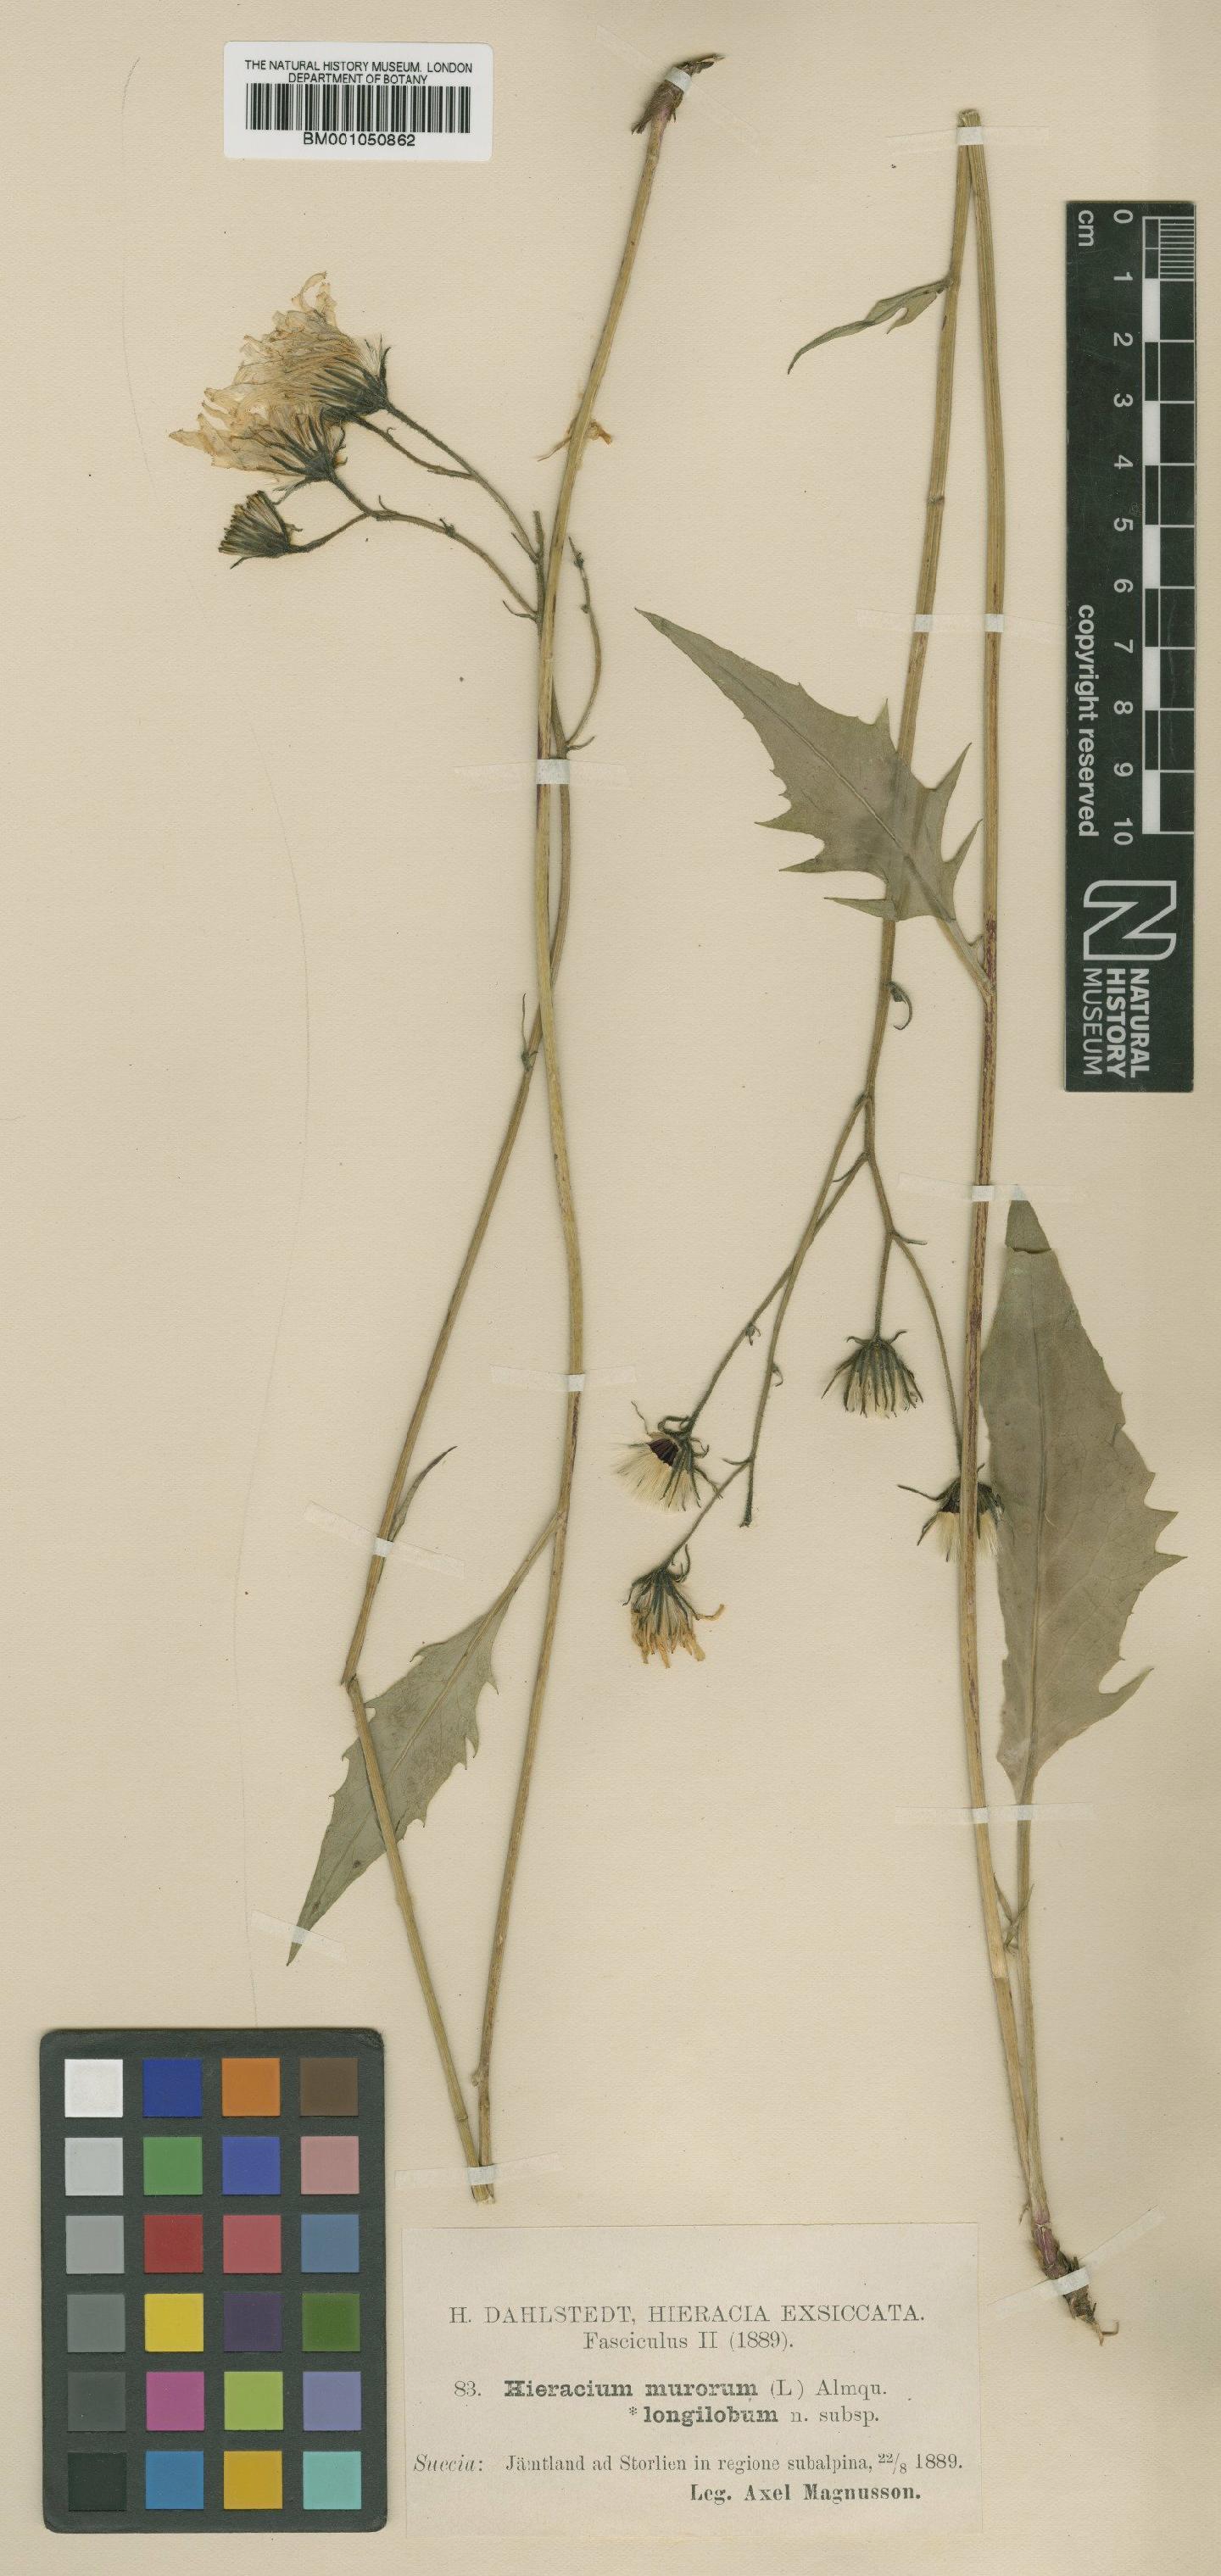 To NHMUK collection (Hieracium murorum subsp. longilobum Dahlst.; TYPE; NHMUK:ecatalogue:2400024)